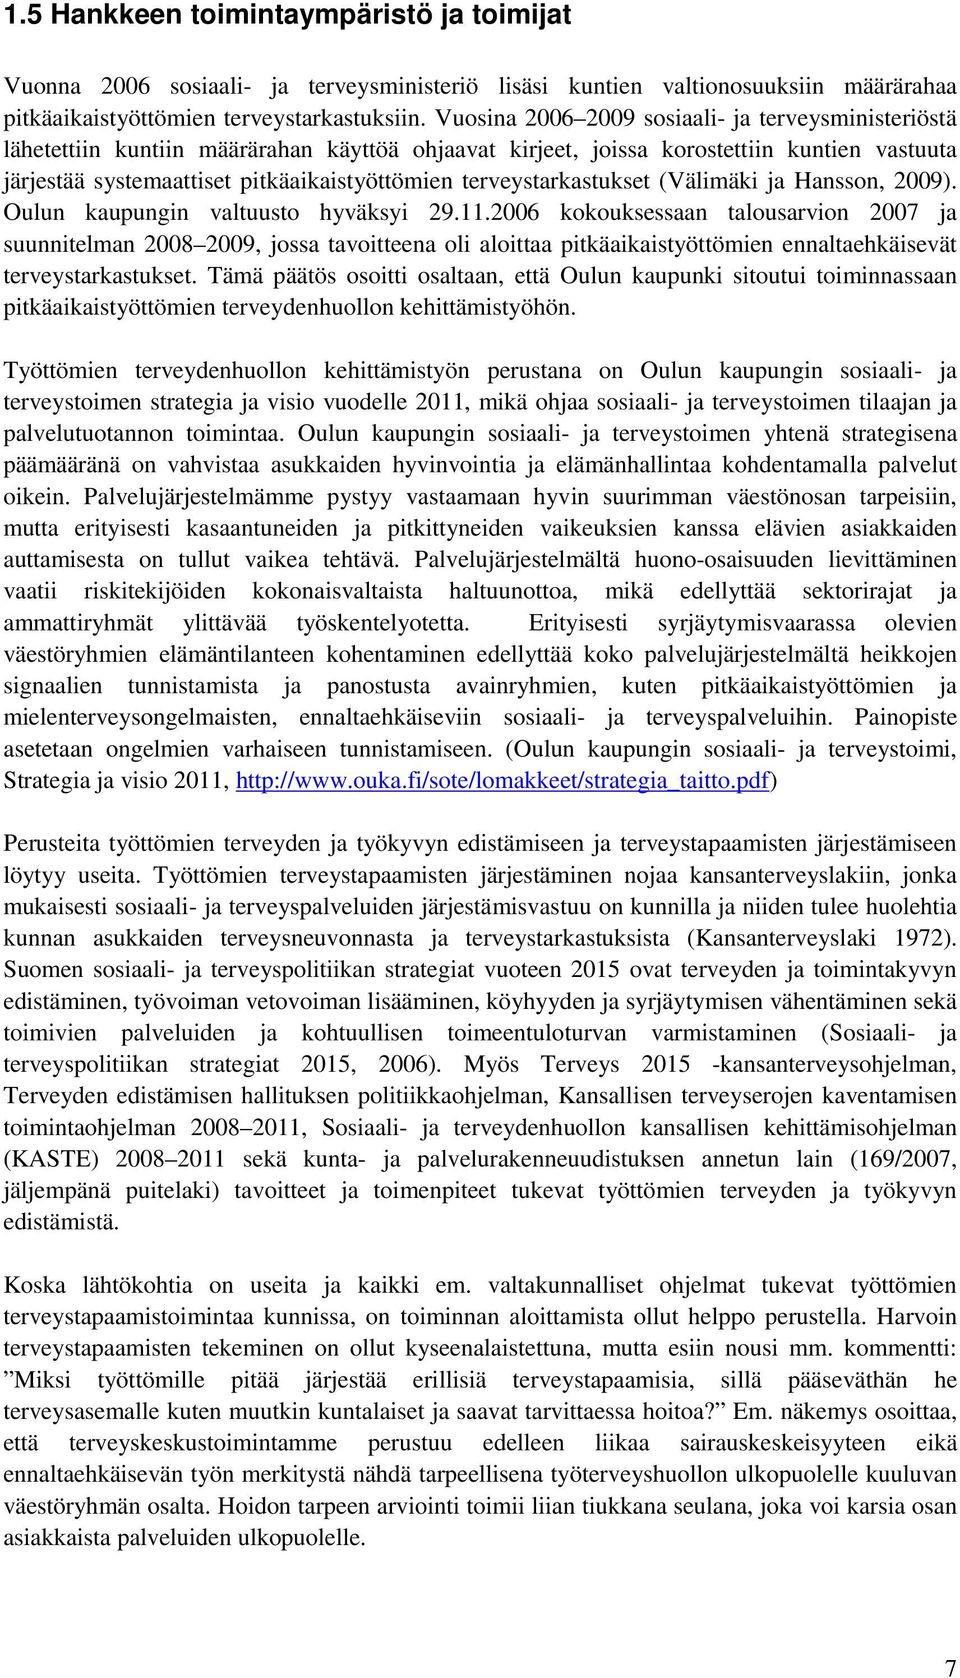 terveystarkastukset (Välimäki ja Hansson, 2009). Oulun kaupungin valtuusto hyväksyi 29.11.